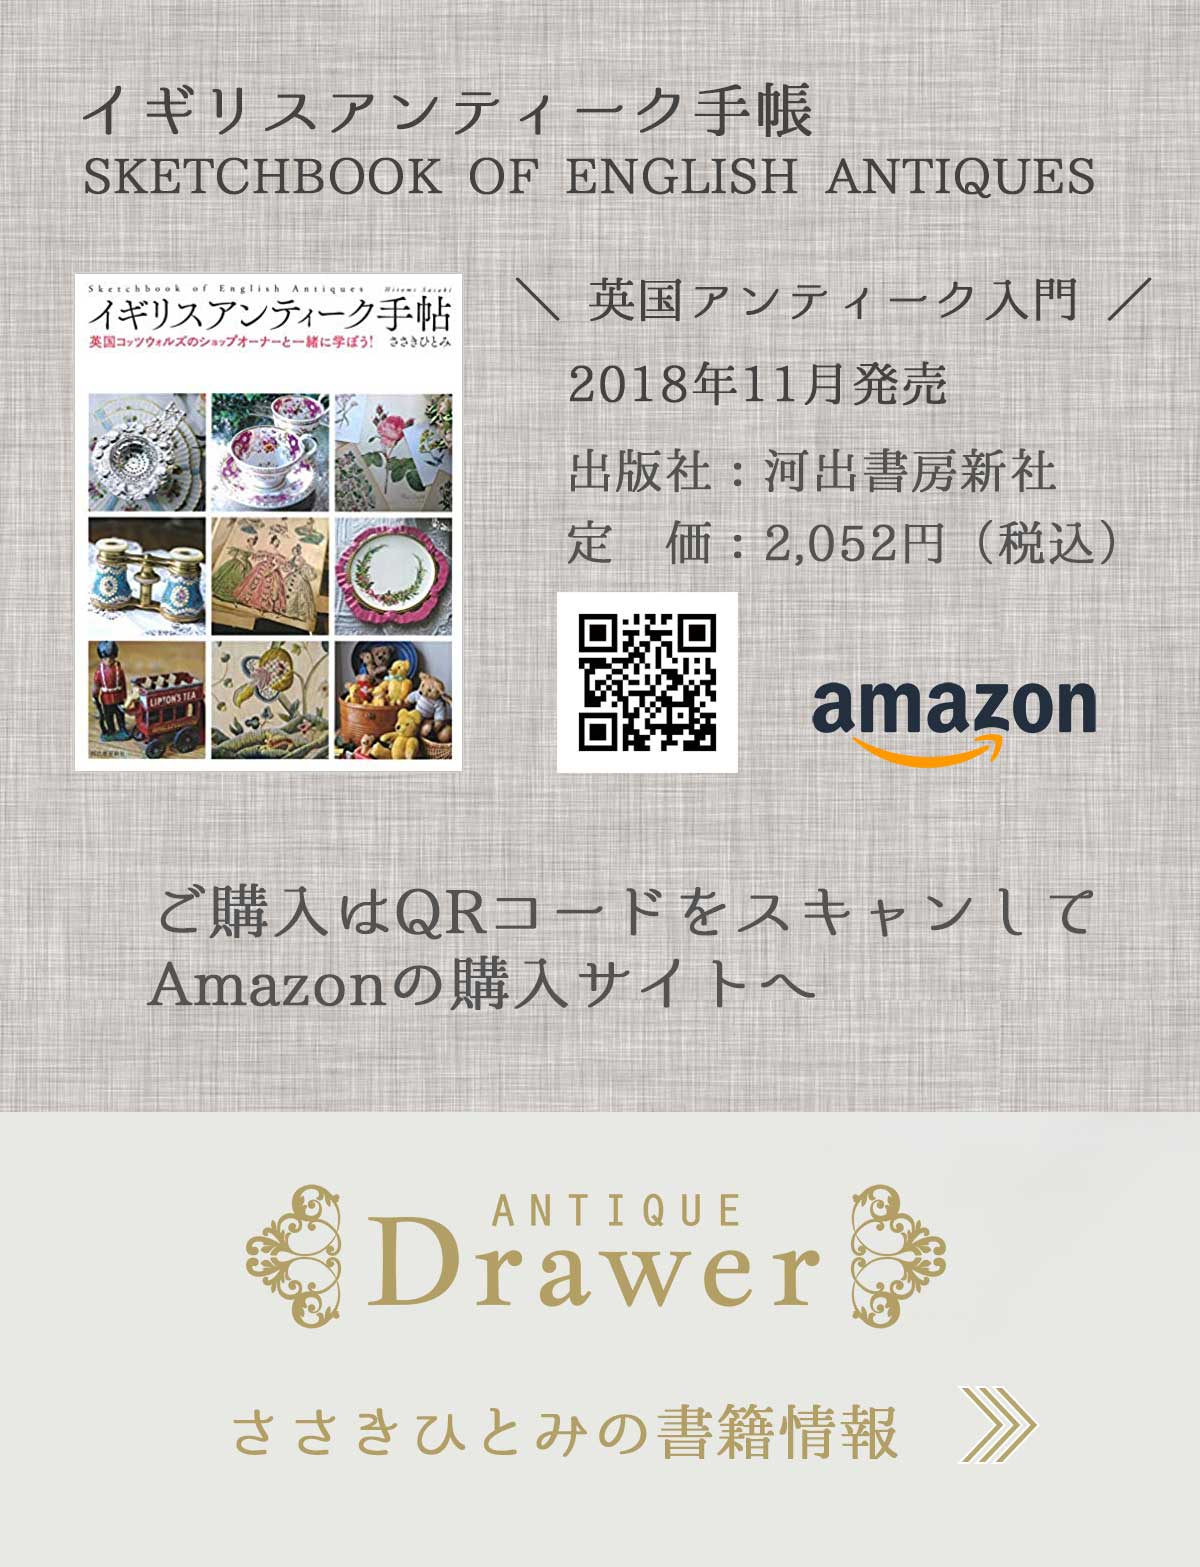 “Drawer